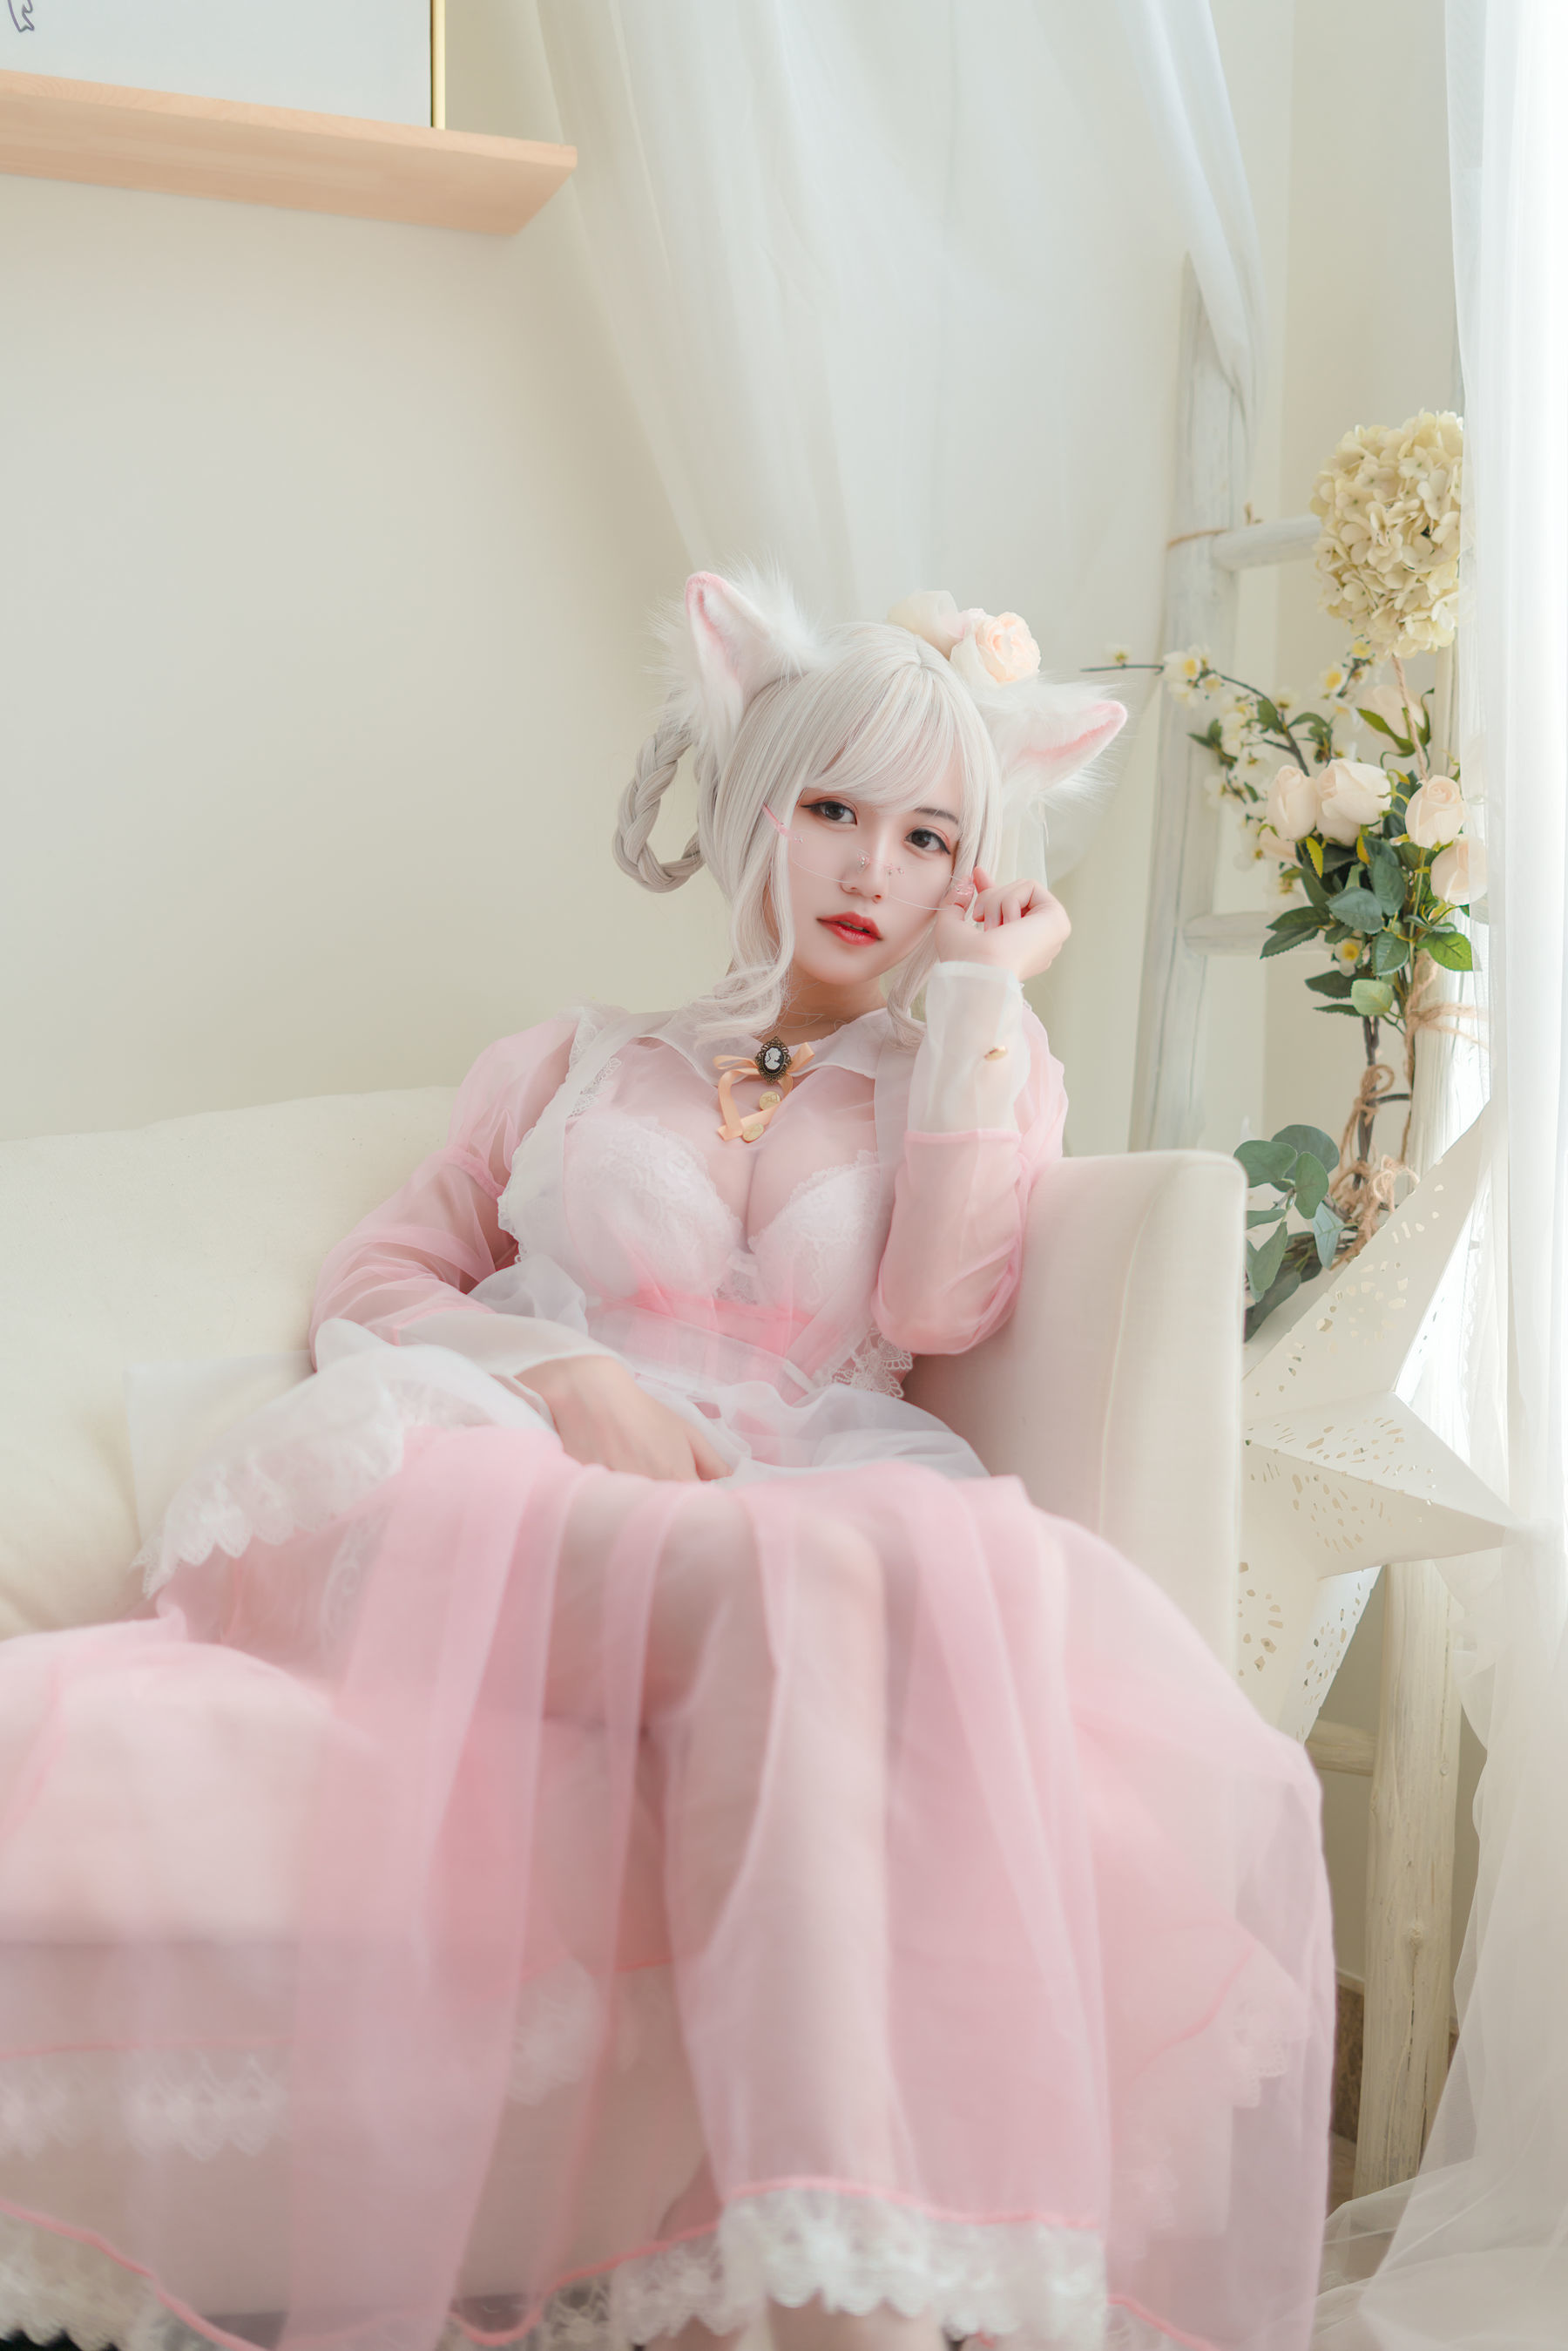 [网 红 COSER] Xiao Xiao thousandth W – transparent pink maid photo set